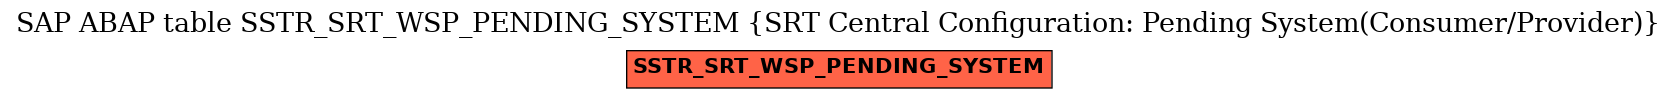 E-R Diagram for table SSTR_SRT_WSP_PENDING_SYSTEM (SRT Central Configuration: Pending System(Consumer/Provider))